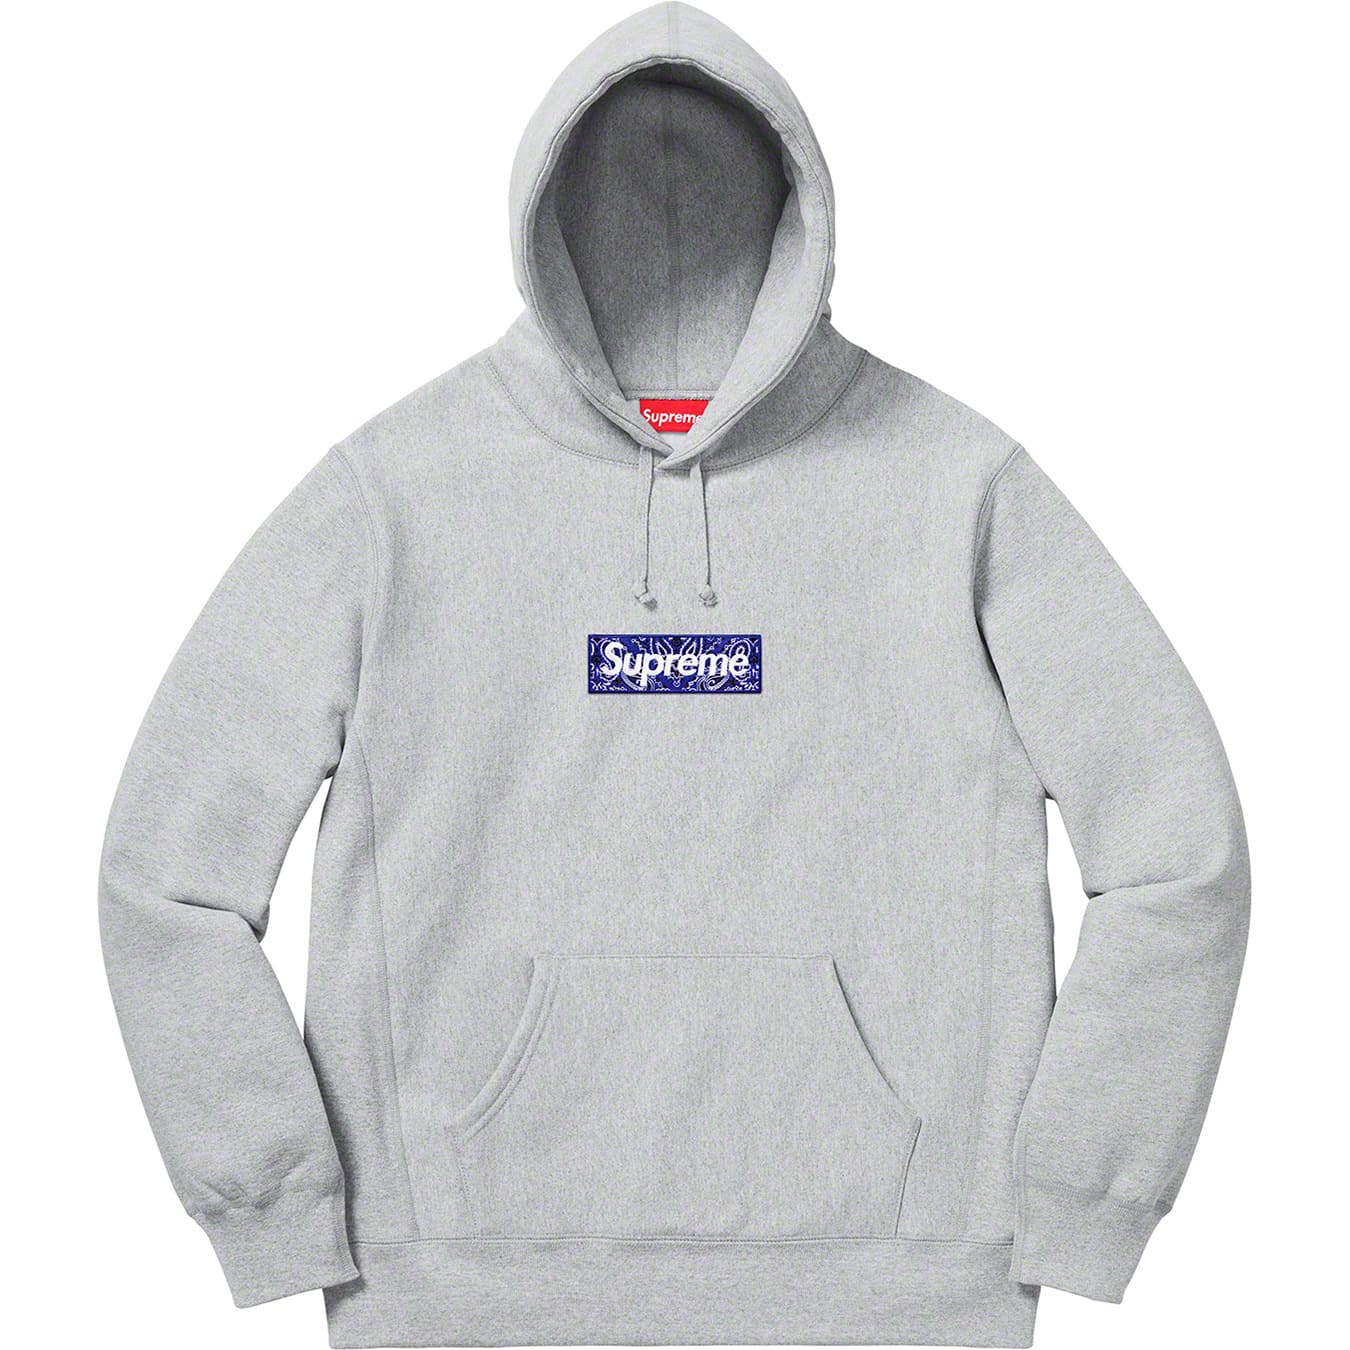 希少Supreme Box Logo Hooded Sweatshirt
M